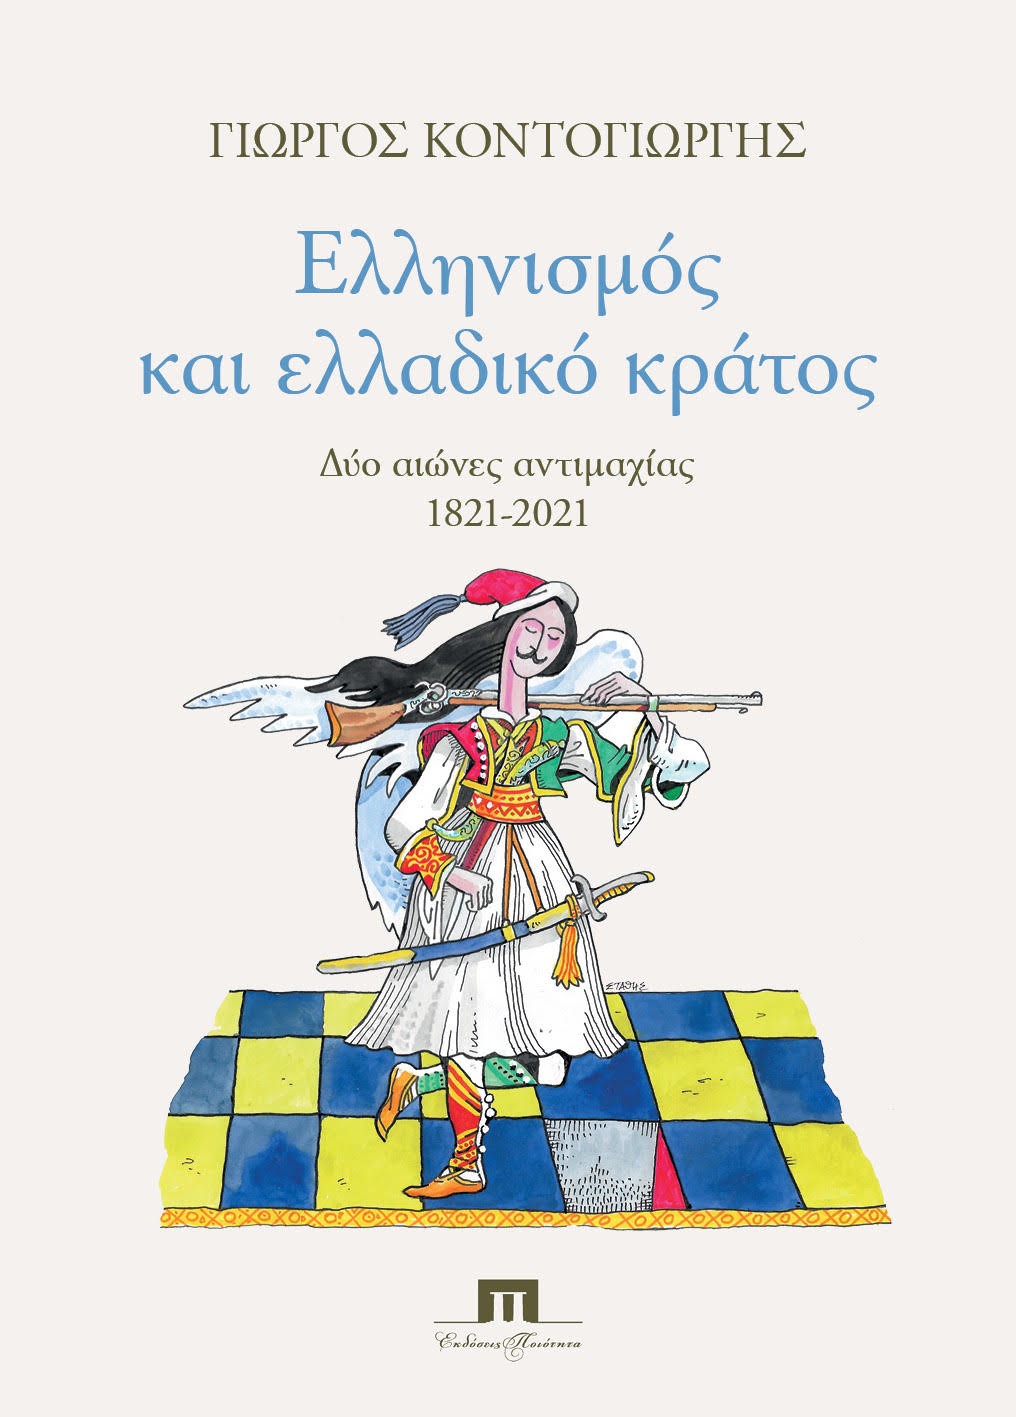 Ελληνισμός και ελλαδικό κράτος, Δύο αιώνες αντιμαχίας 1821-2021, Κοντογιώργης, Γεώργιος Δ., Ποιότητα, 2020